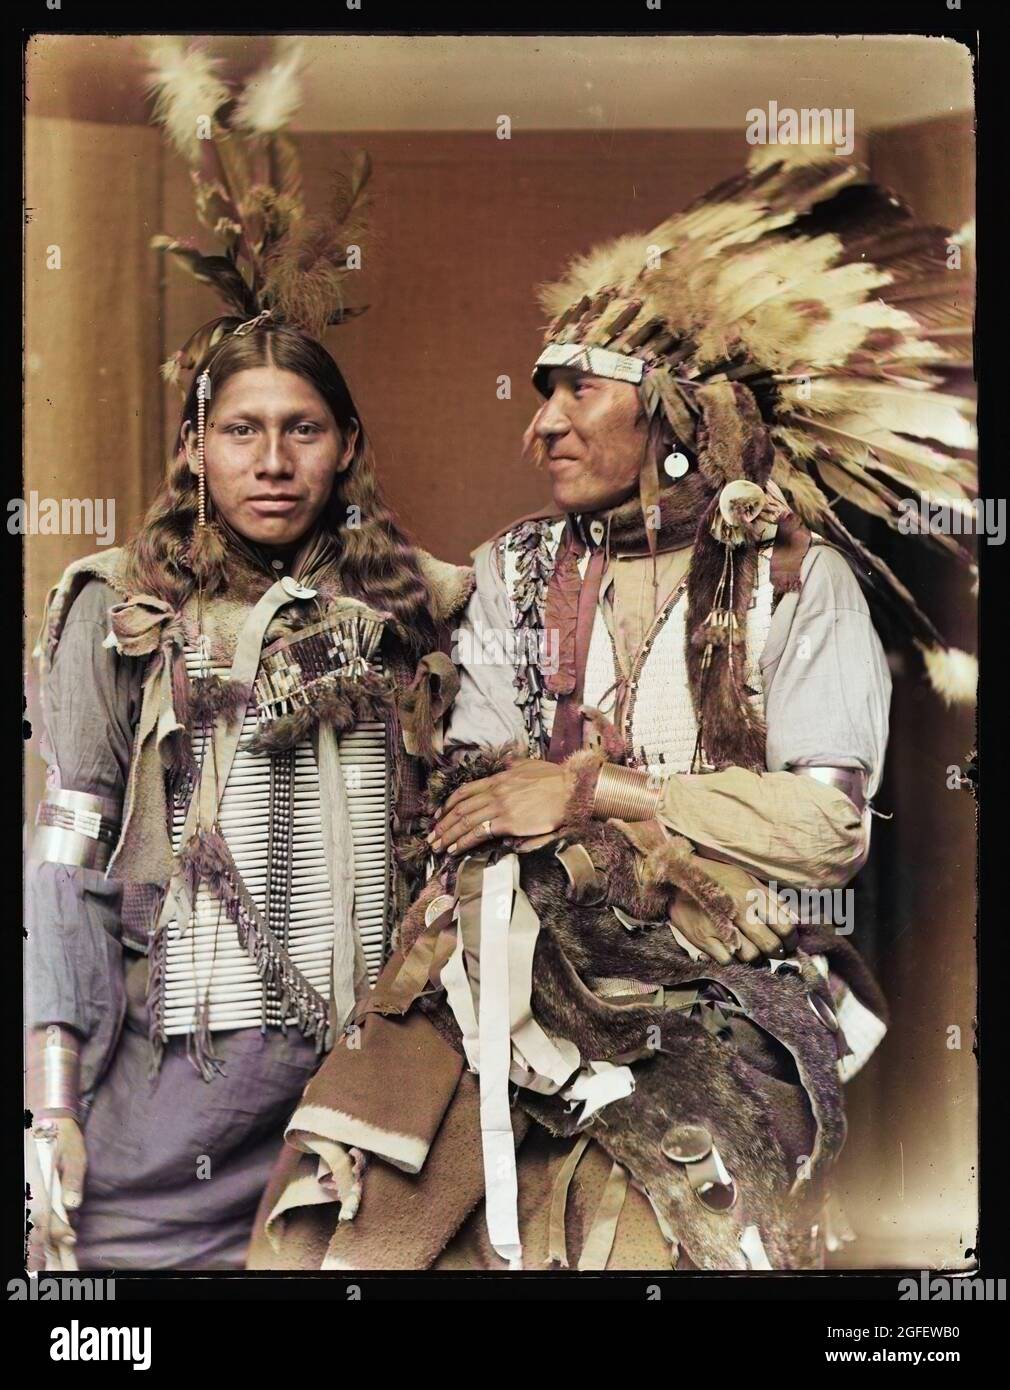 Heilige Fro- Links und große Rüben, indianer/Indianer. Wahrscheinlich Mitglieder der Buffalo Bill's Wild West Show. C 1900. Koloriertes Foto. Stockfoto